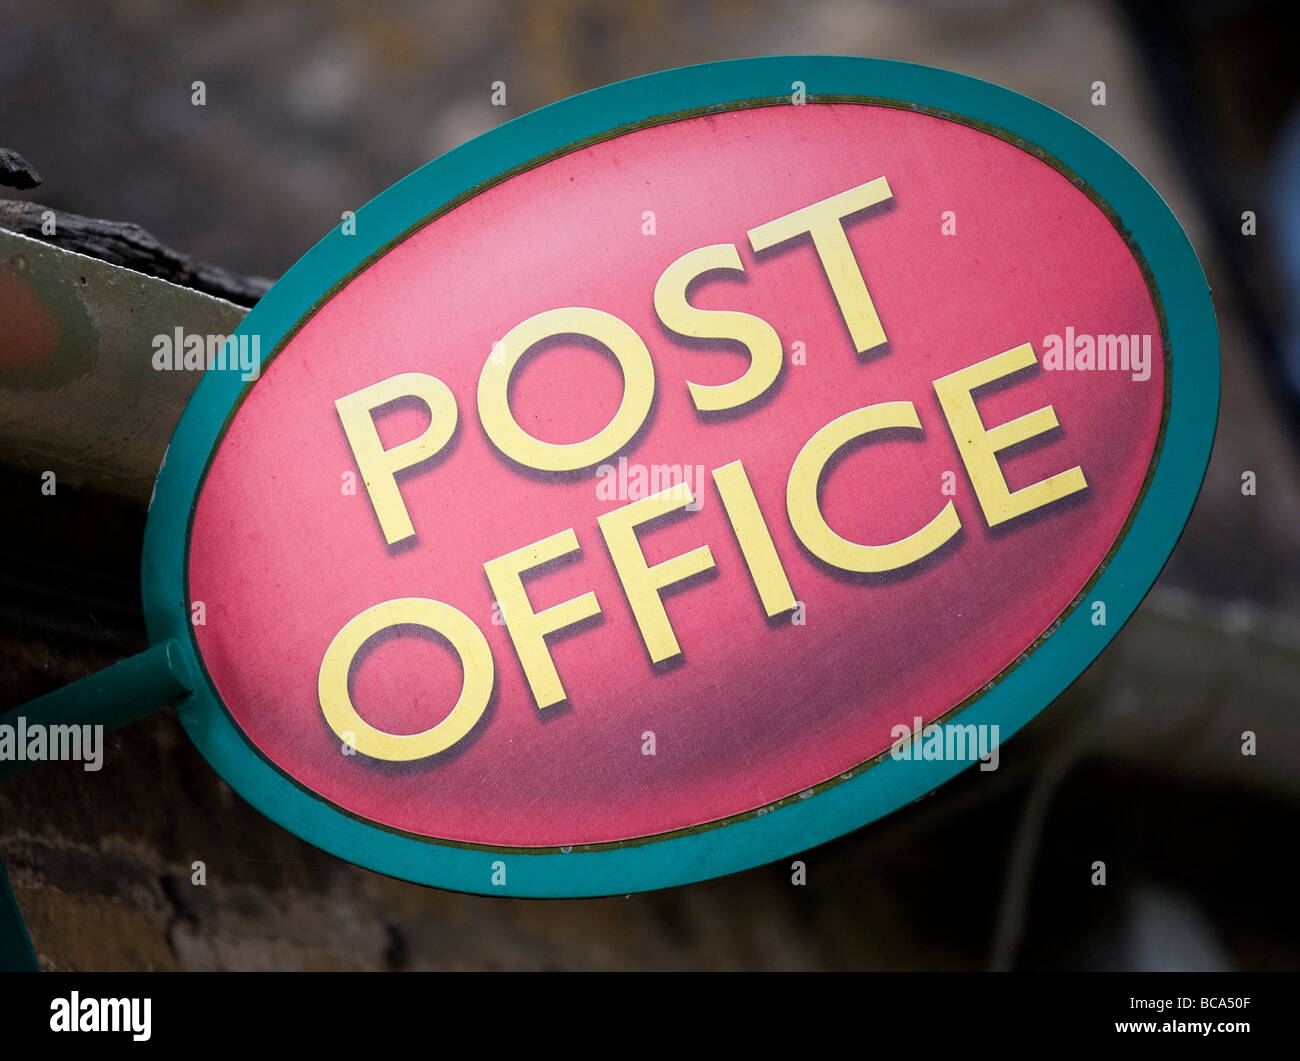 Post office segno Foto Stock